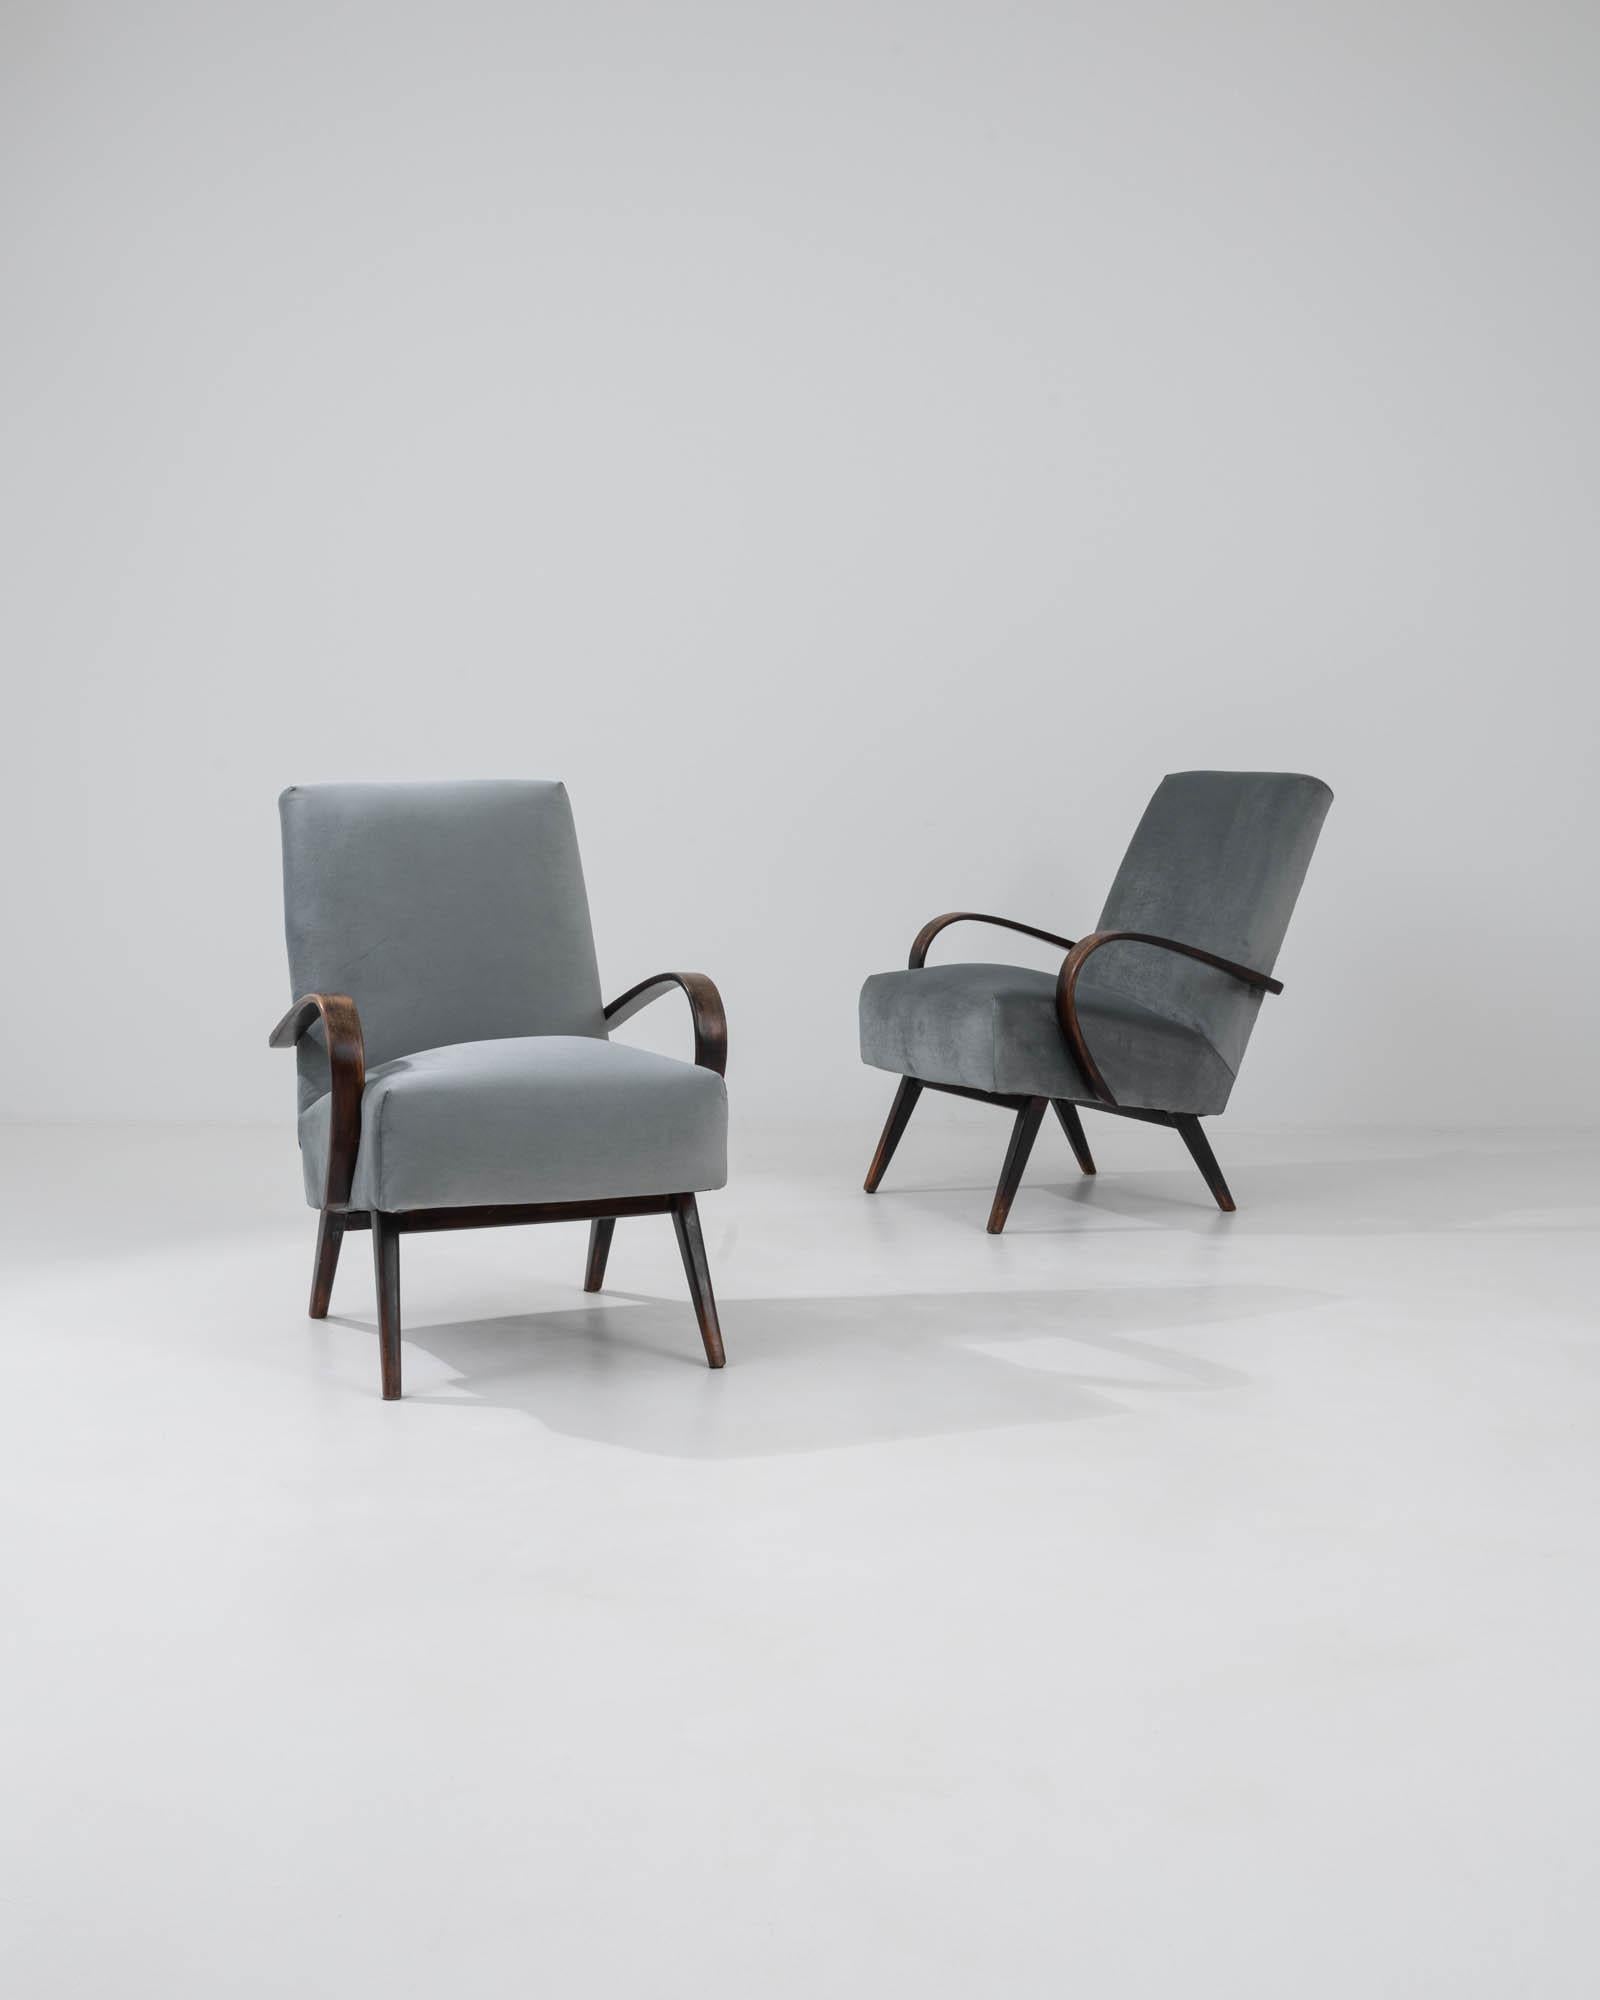 Entrez dans un univers d'élégance intemporelle avec cette paire de fauteuils tchèques des années 1960 du célèbre designer J. Halabala. Exquisément rembourrées dans une nuance sereine de gris, ces chaises encapsulent l'essence du design moderne du